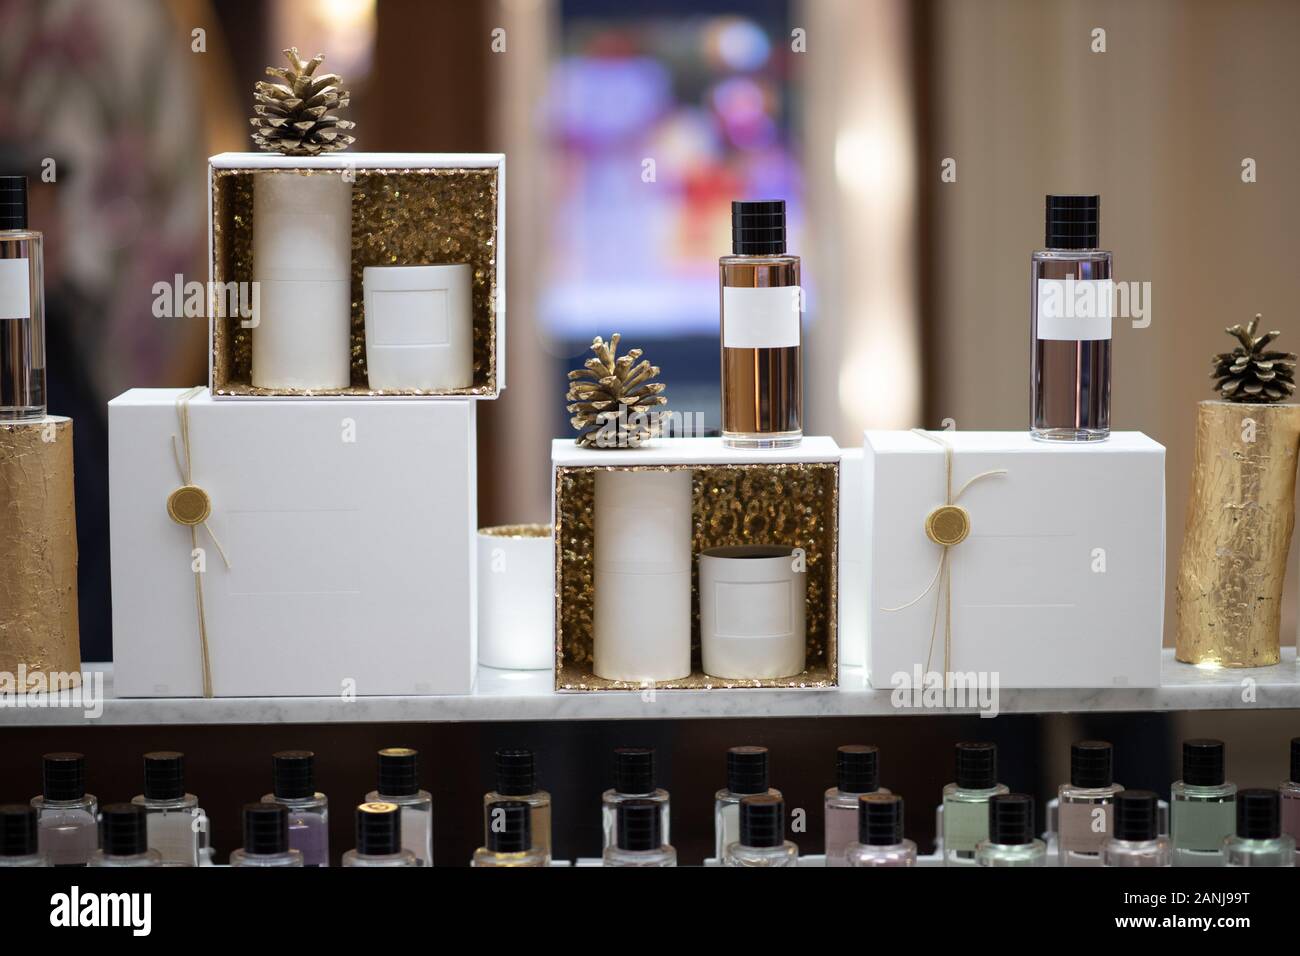 El perfume en la ventana de un perfume caro almacenar Fotografía de stock -  Alamy